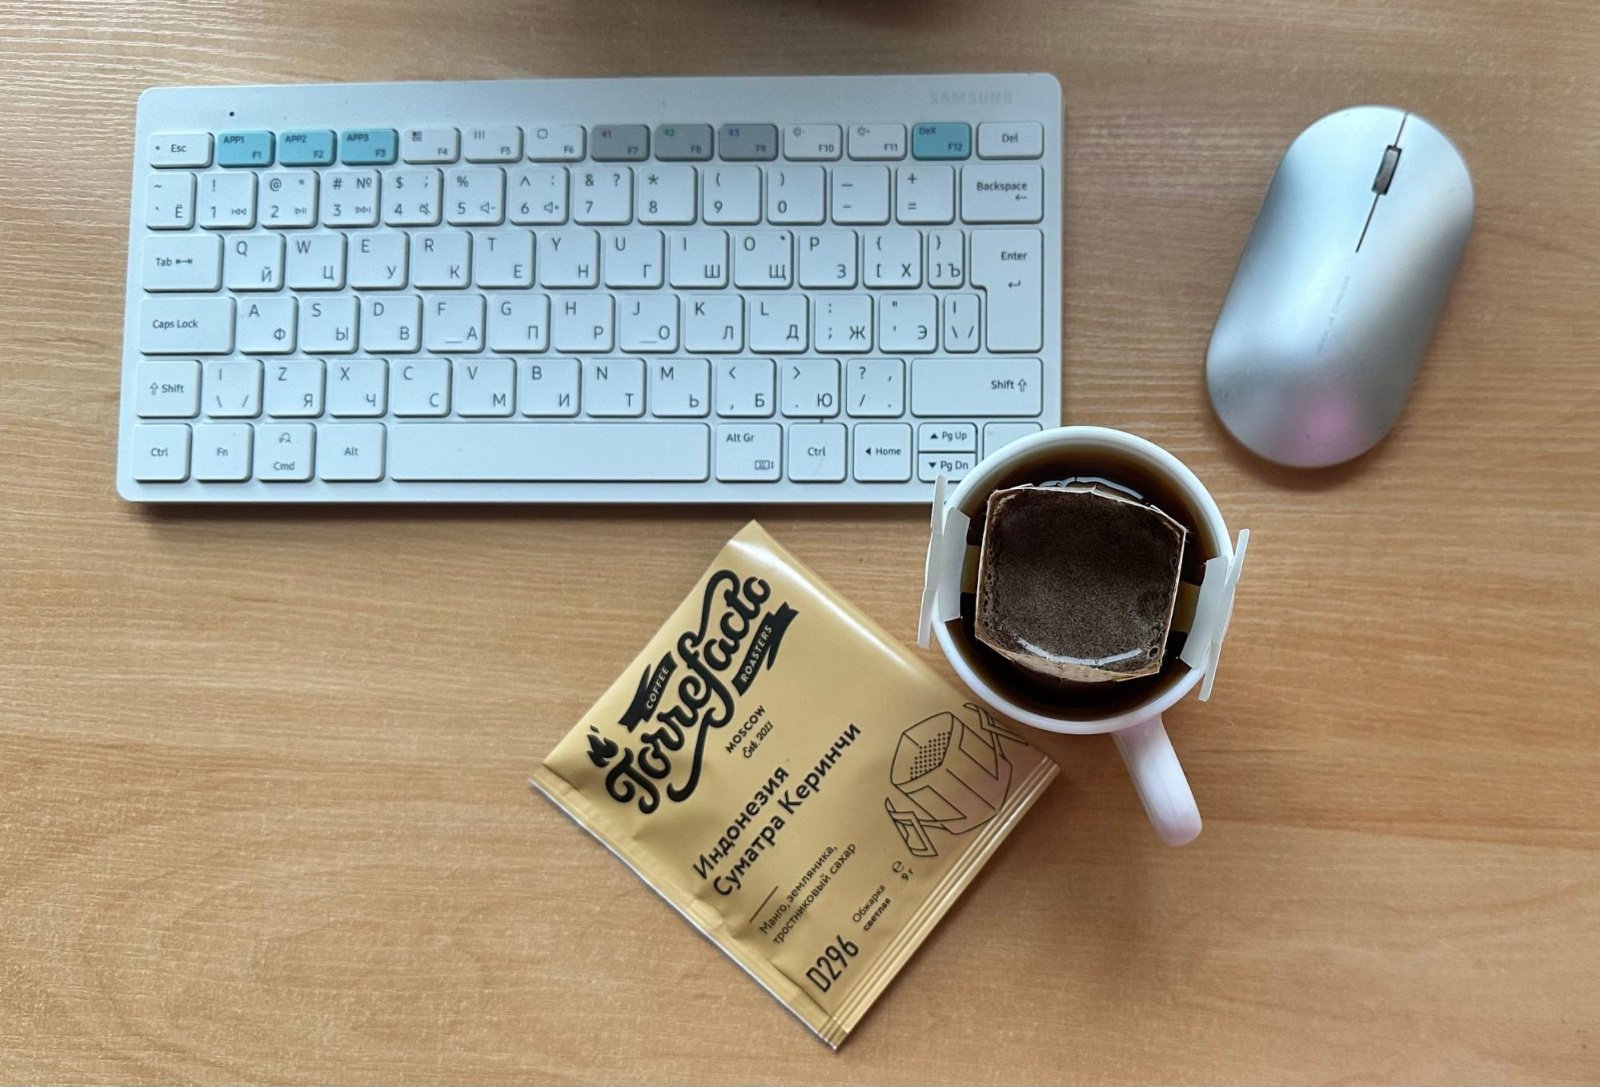 Кофе в дрип-пакетах: как просто и быстро получить вкусный напиток в любых условиях